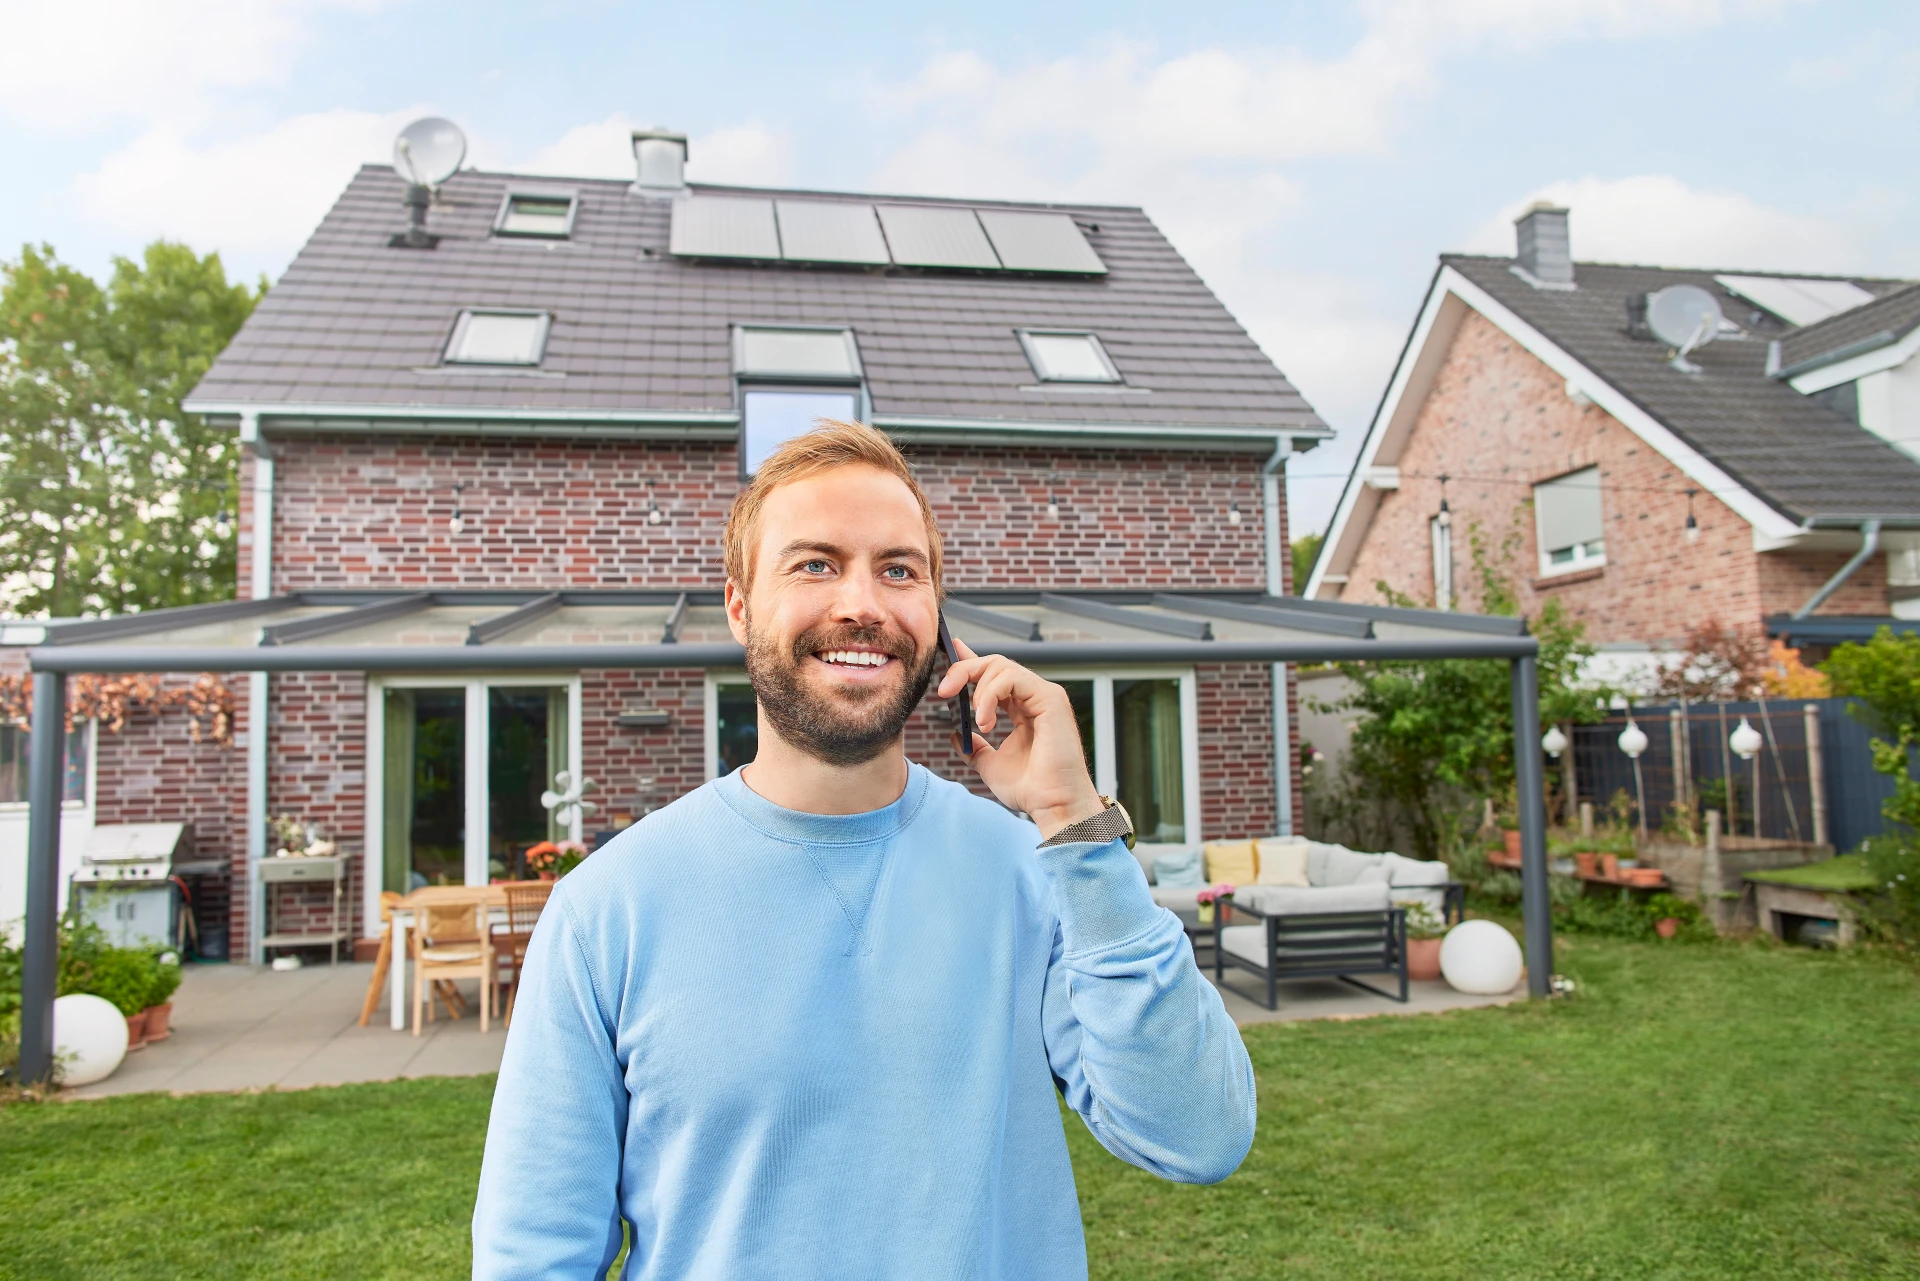 Ein zufriedener Photovoltaikanlagen Besitzer telefoniert vor seinem Einfamilienhaus, auf dessen Dach die Photovoltaikanlage zu sehen ist.